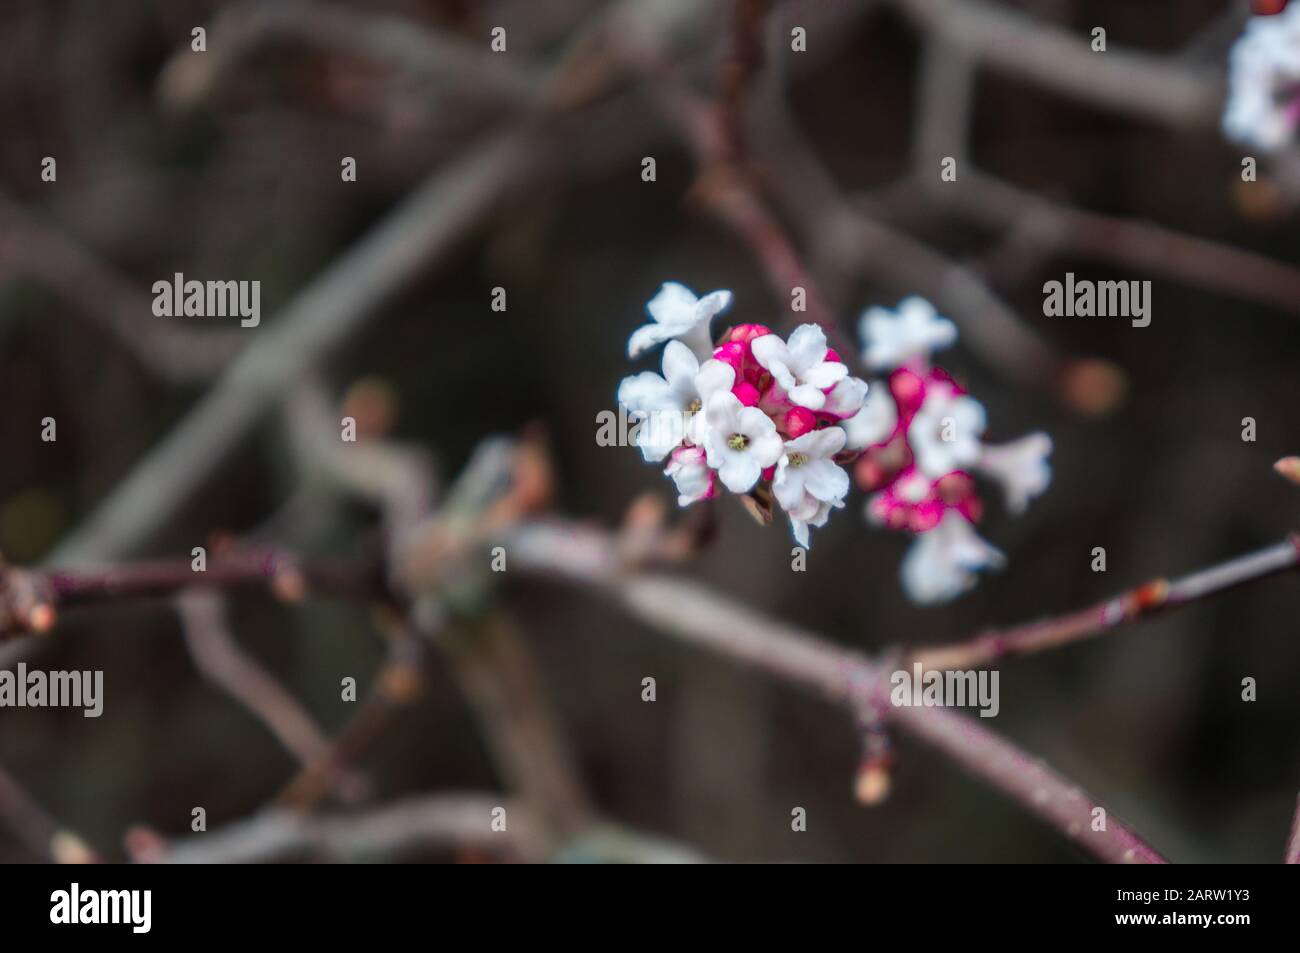 Nahaufnahme eines kleinen weißen und rosafarbenen Blumenhaufens mit dünnen Zweigen, die im Hintergrund nicht scharf sind. An einem hellen Frühlingstag gedreht Stockfoto